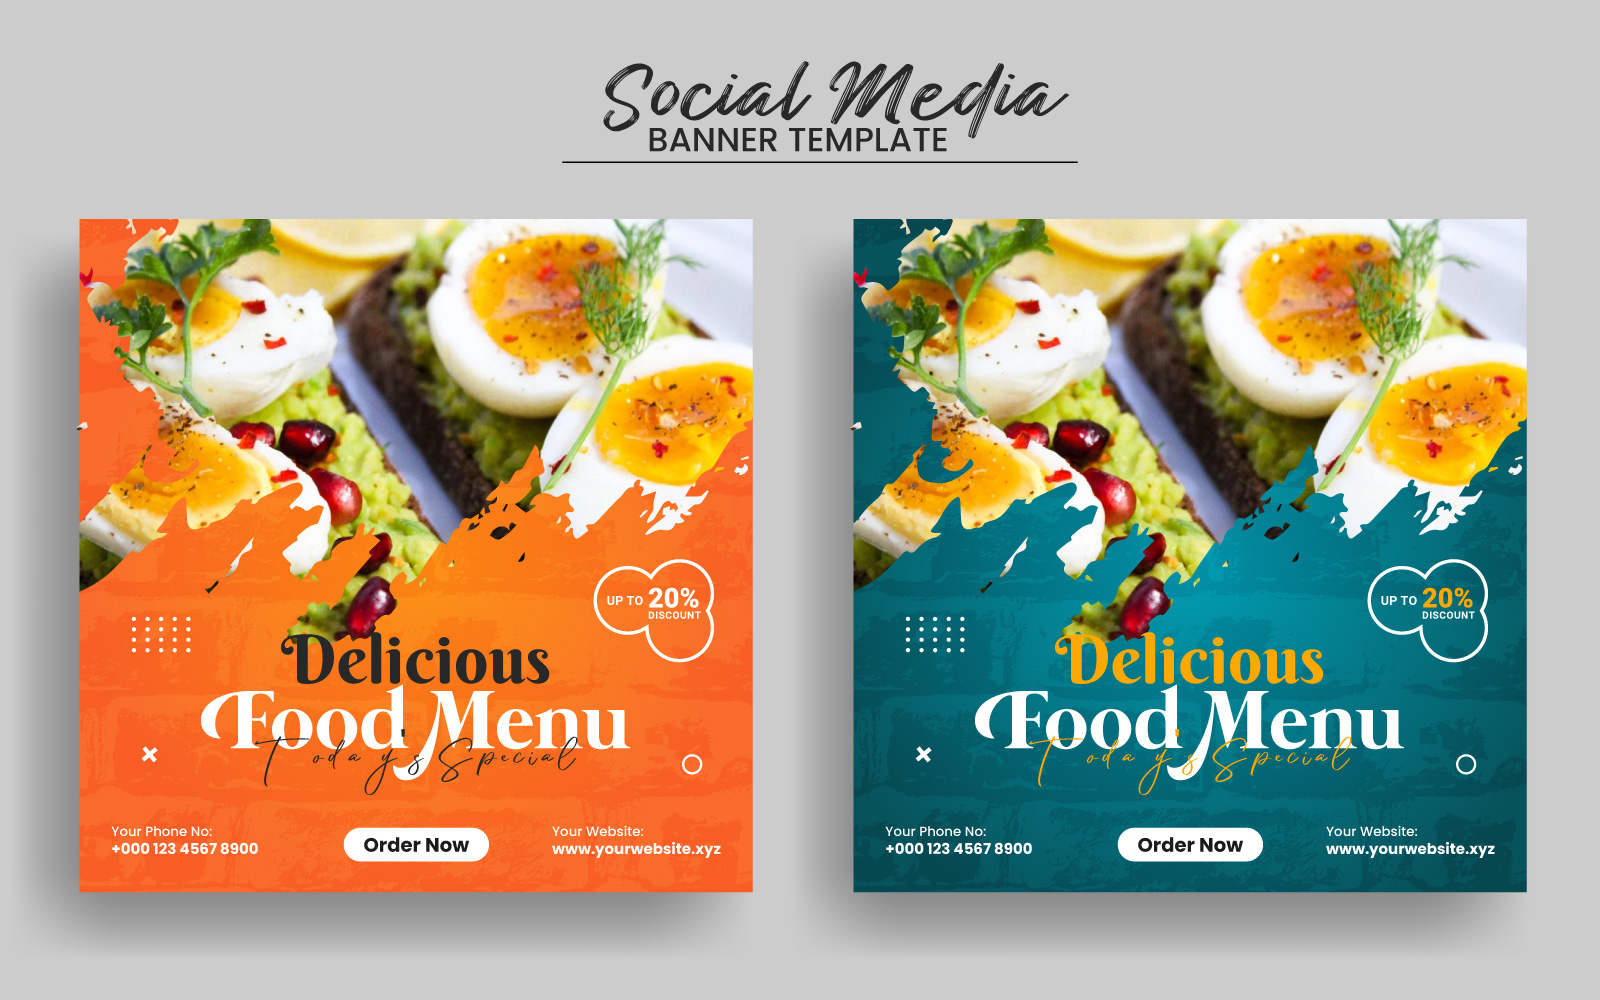 Food Menu Social Media Post Banner